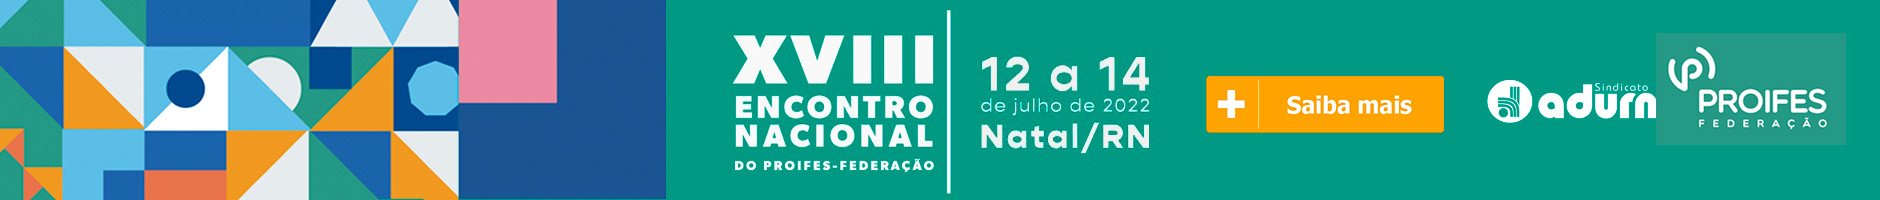 XVIII Encontro Nacional do PROFES-Federação